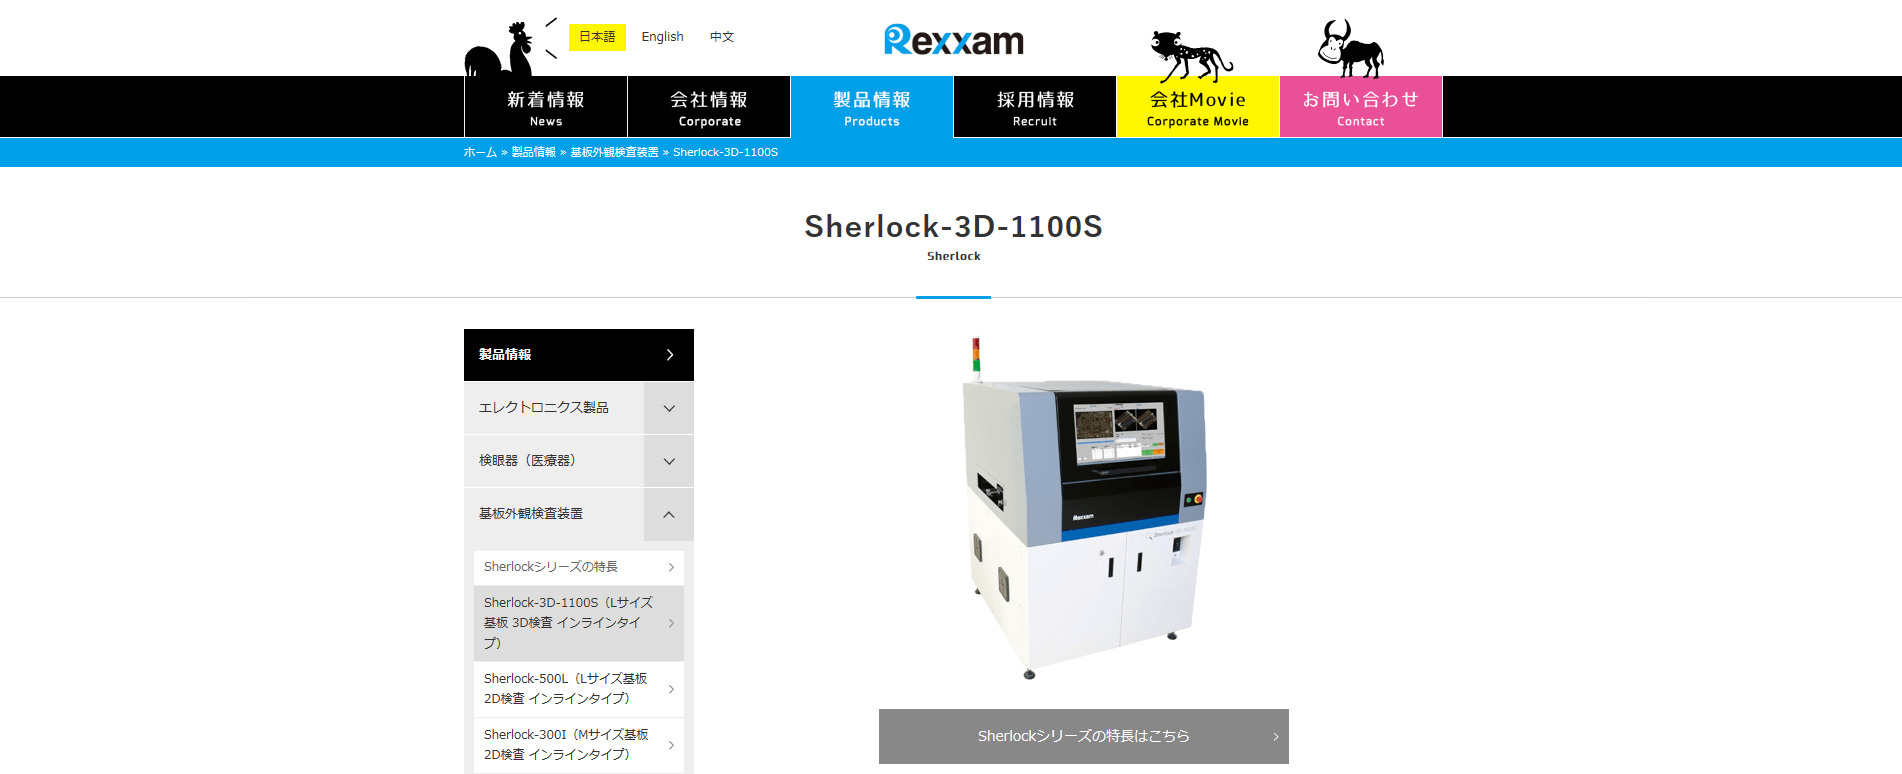 Sherlock-3D-1100S